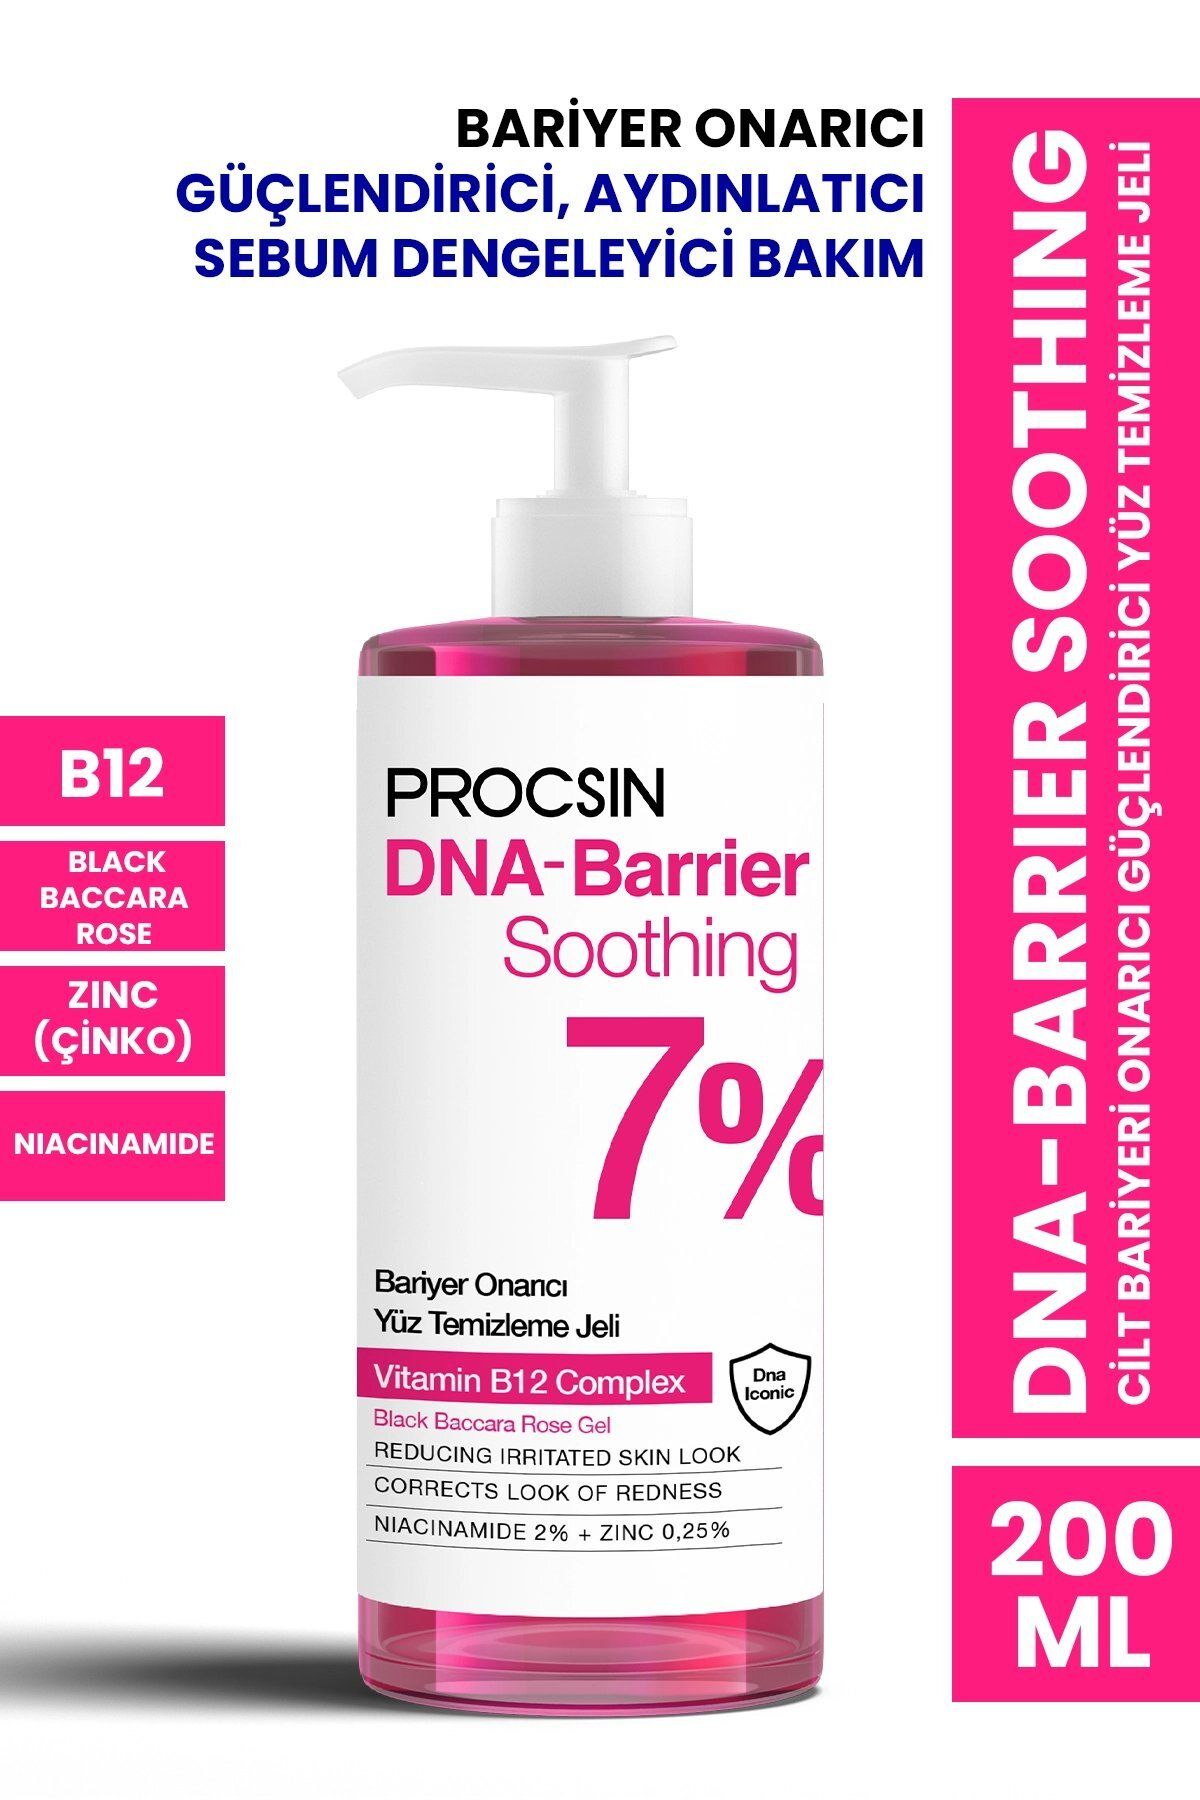 PROCSIN DNA-Barrier Soothing Cilt Bariyeri Onarıcı Güçlendirici Yüz Temizleme Jeli